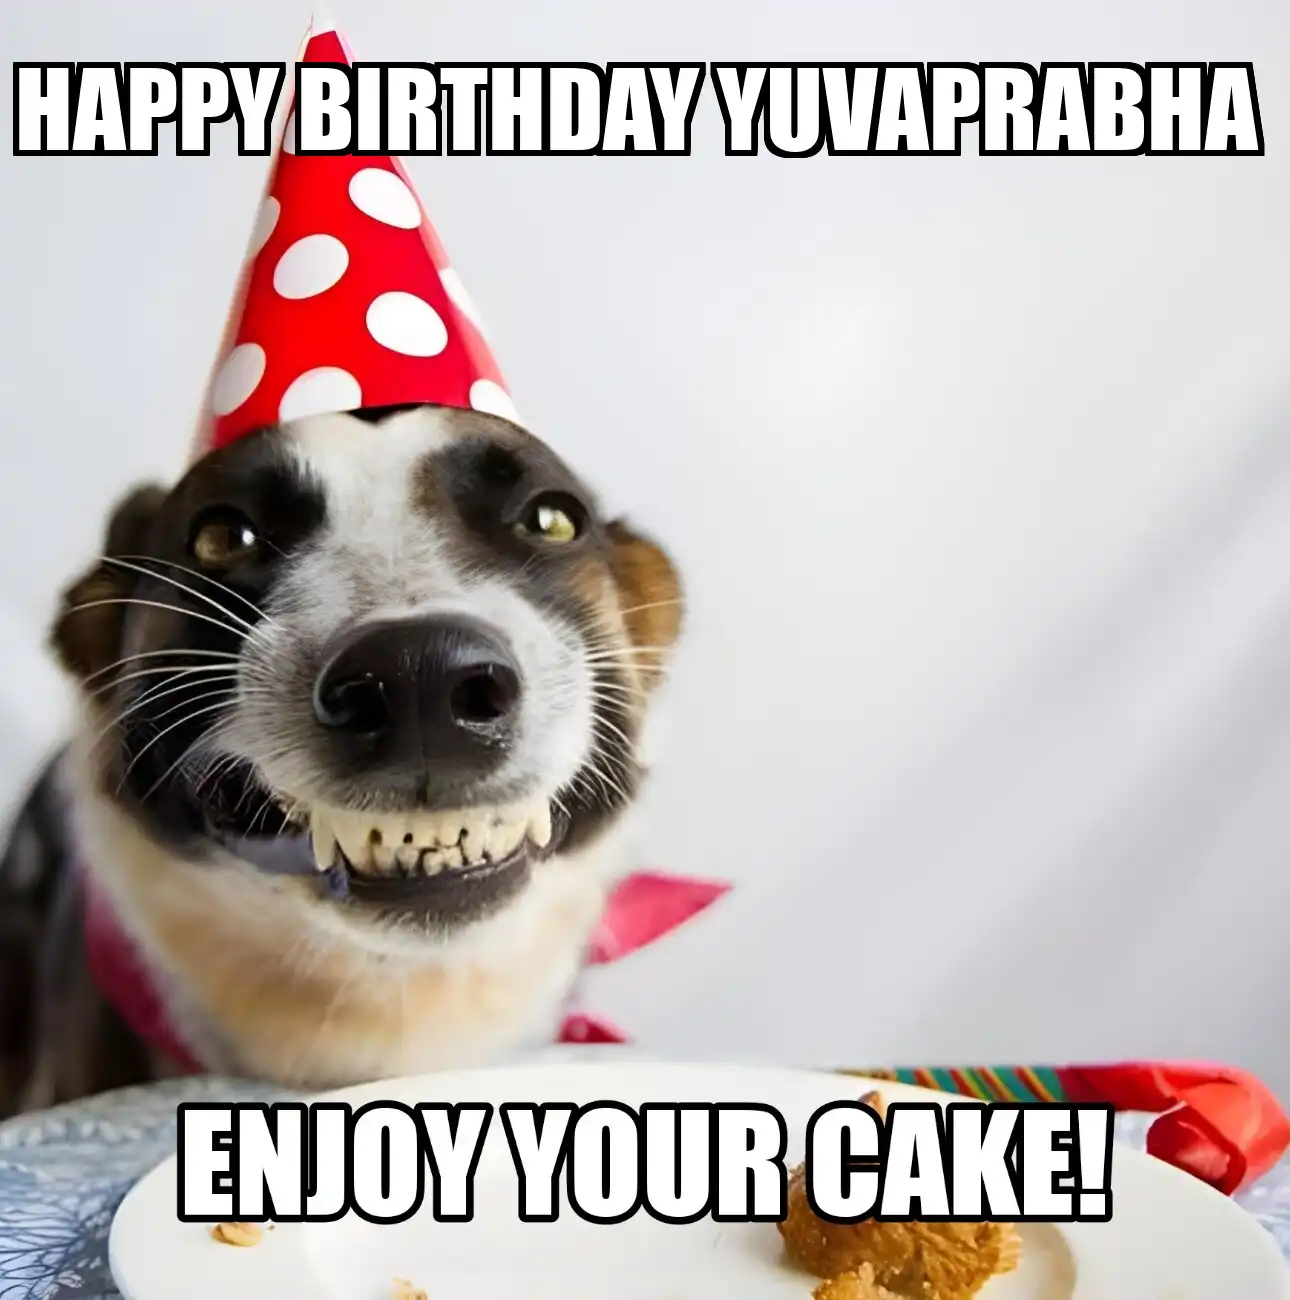 Happy Birthday Yuvaprabha Enjoy Your Cake Dog Meme